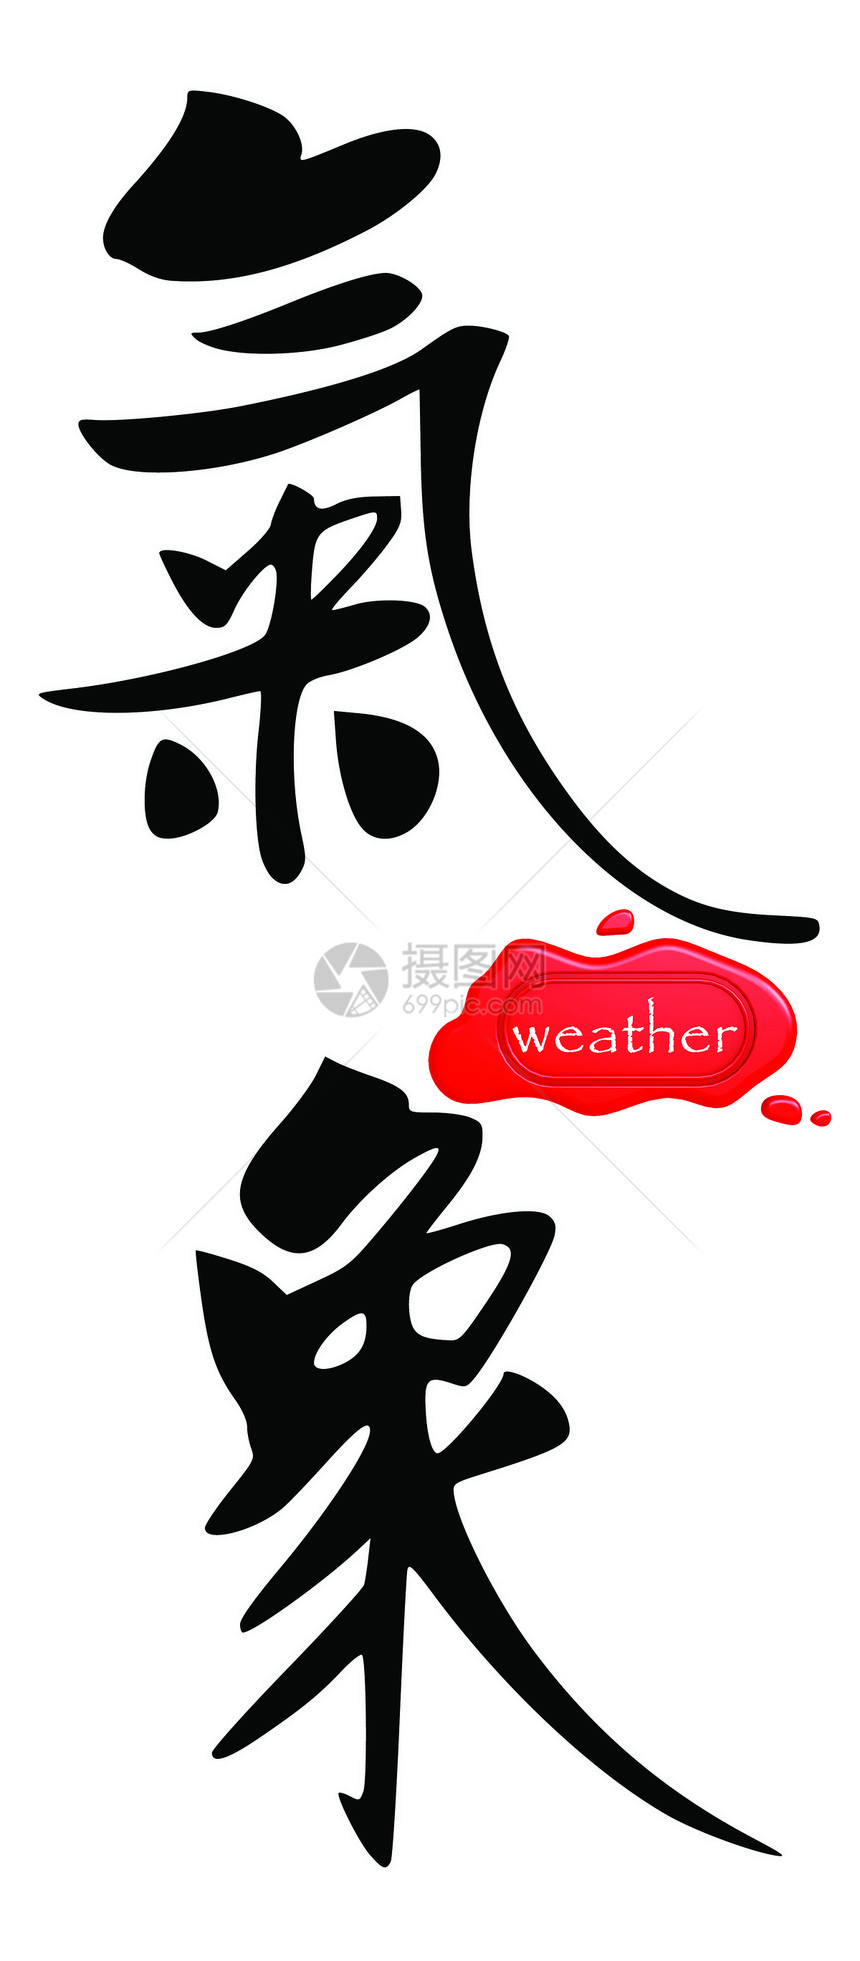 中文气象( 中国文)图片